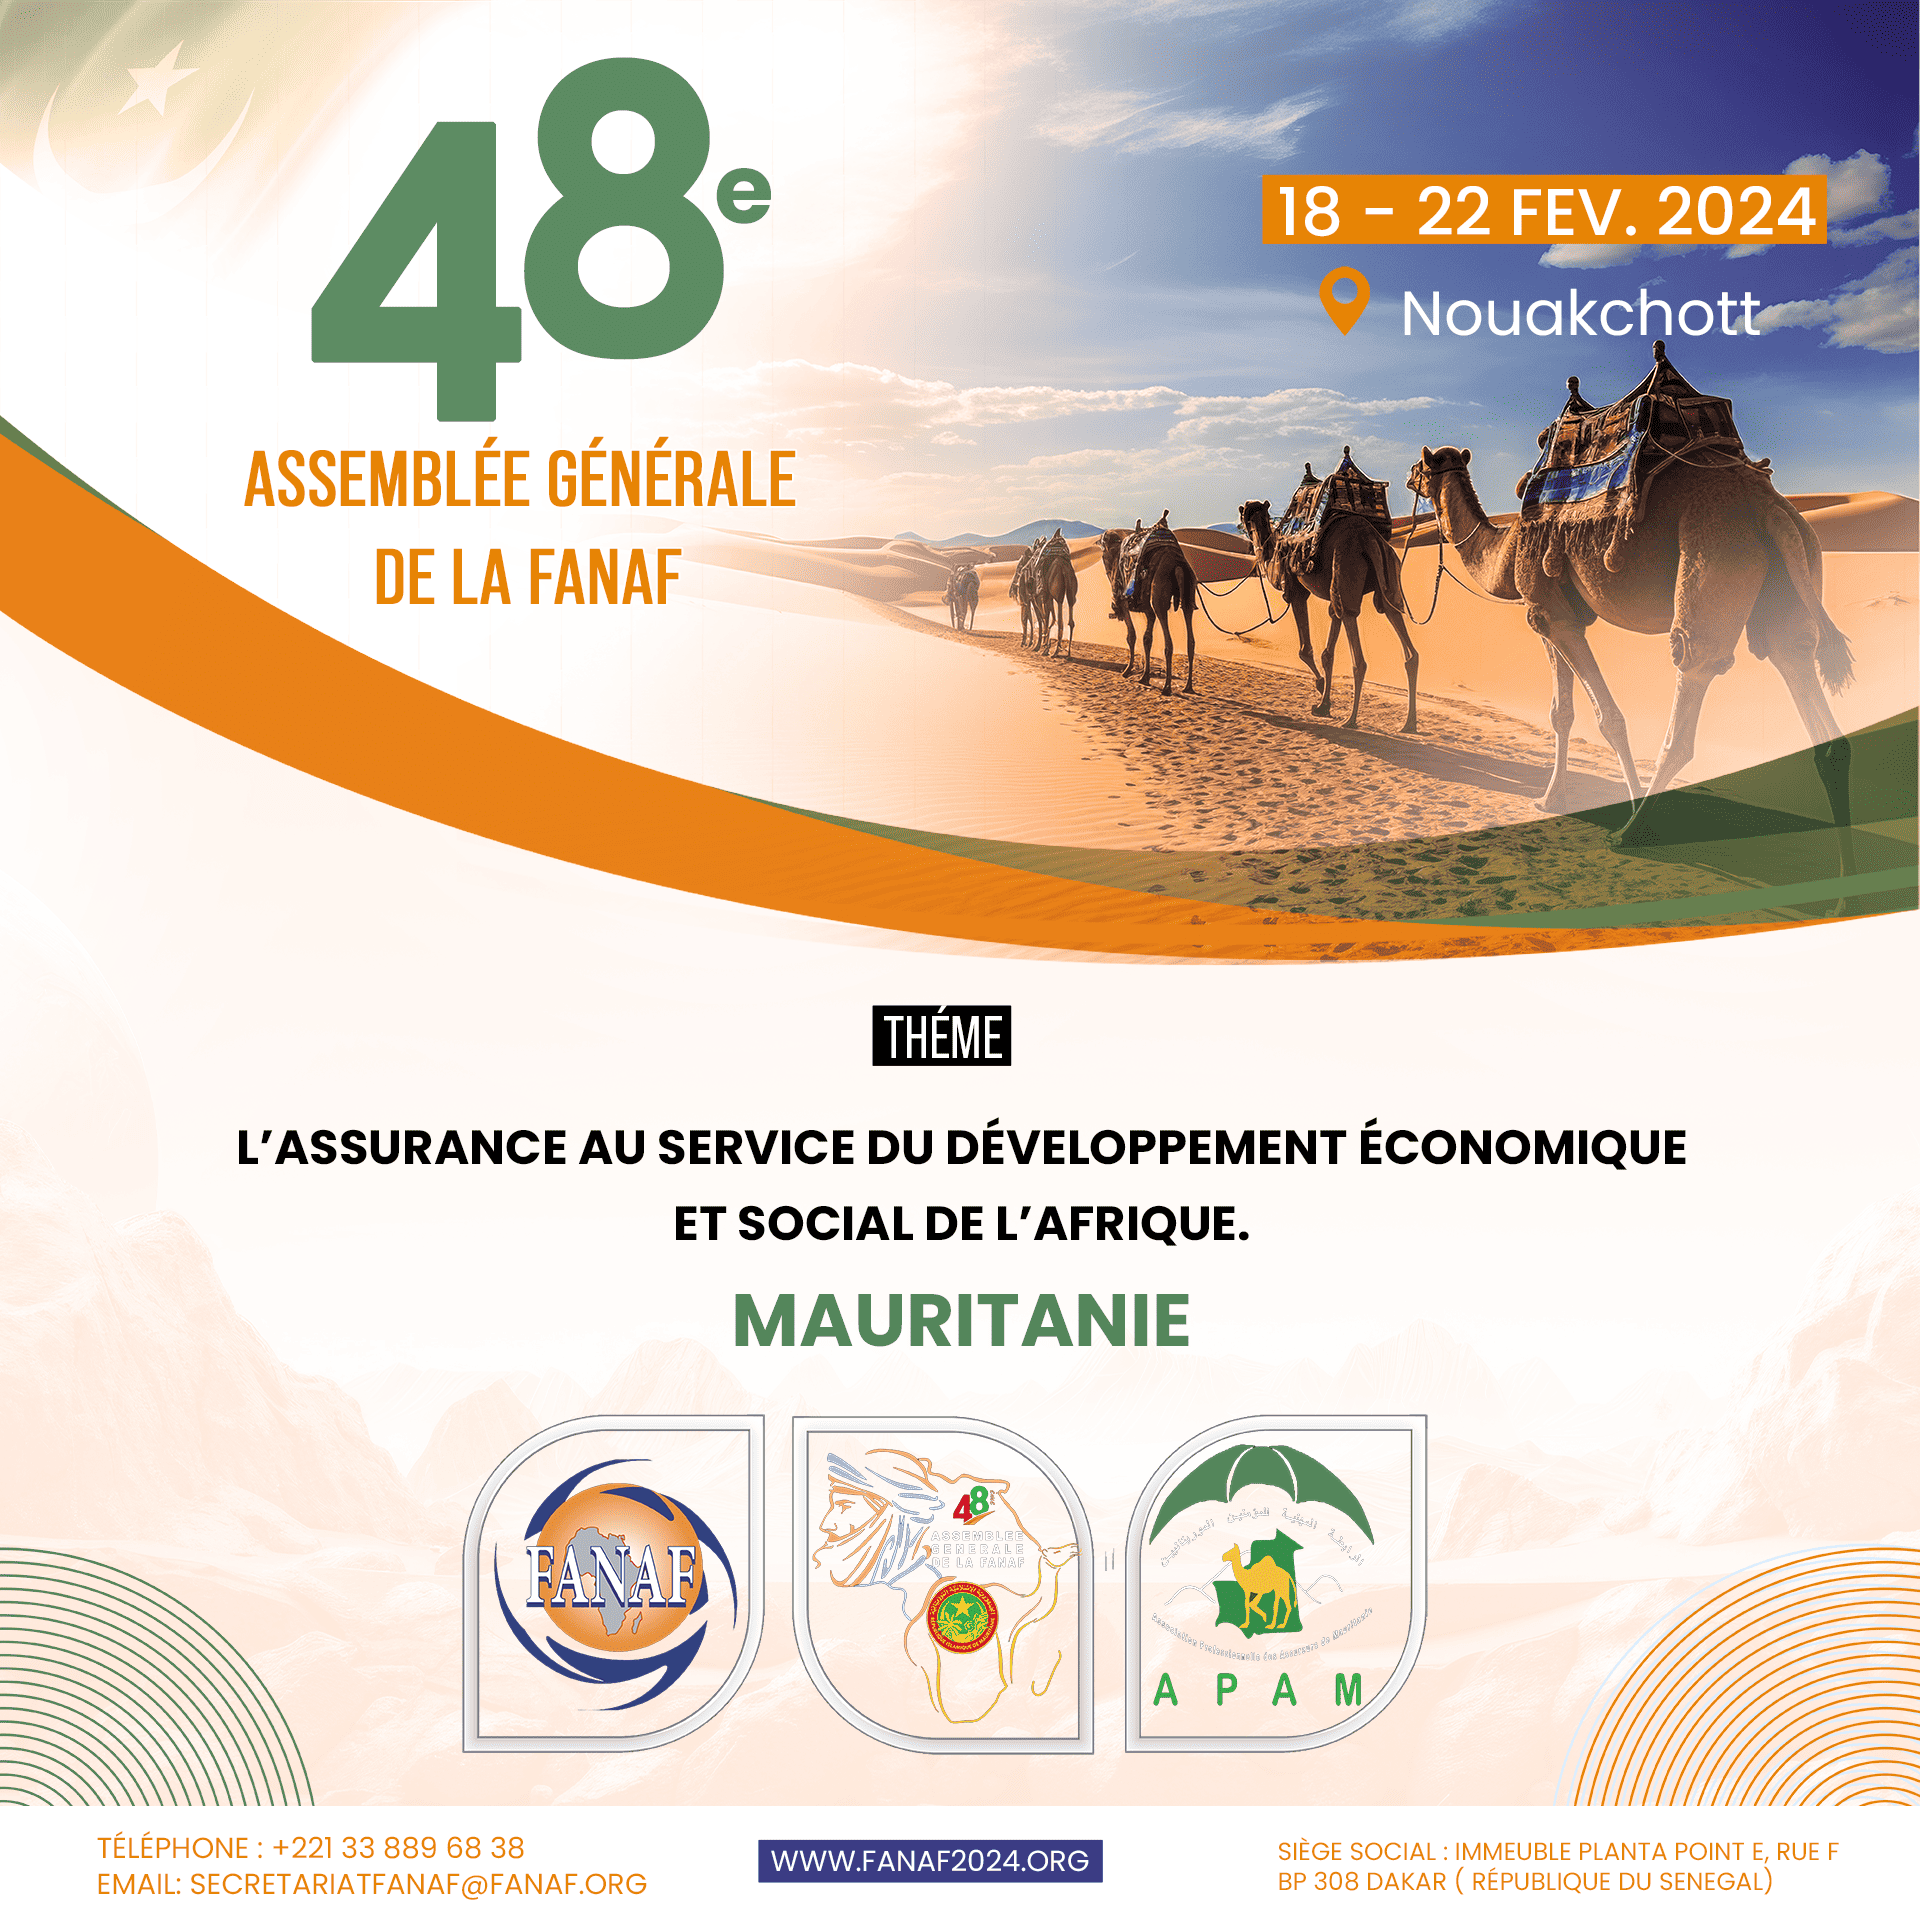 48e Assemblée Générale de la FANAF, Nouakchott Mauritanie du 18 au 22 février 2024